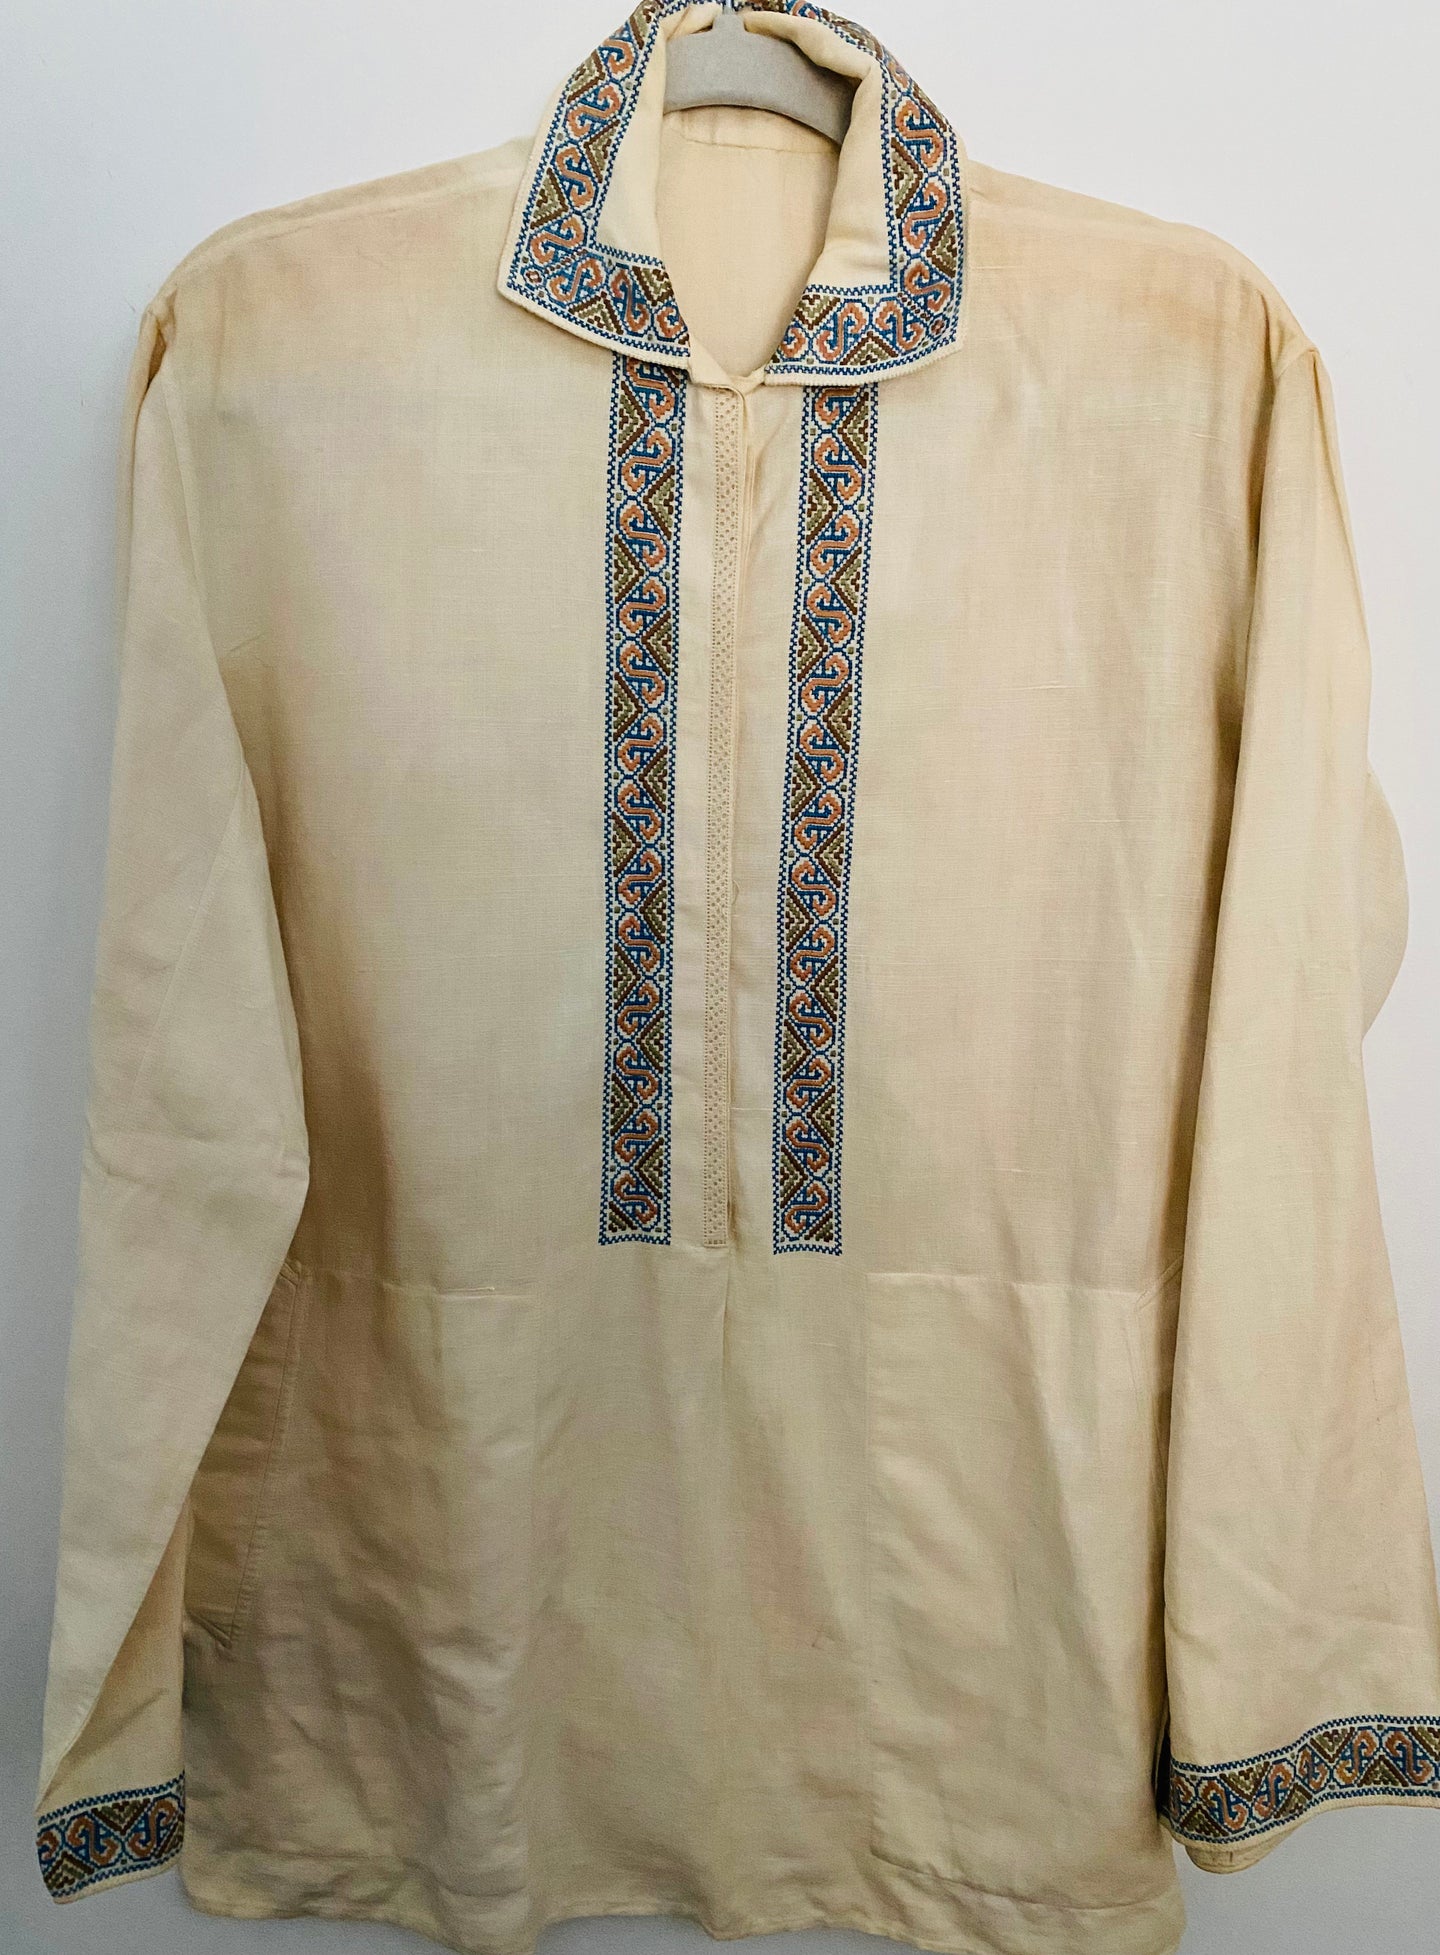 Men's Vintage Embroidered  Shirt  # 825